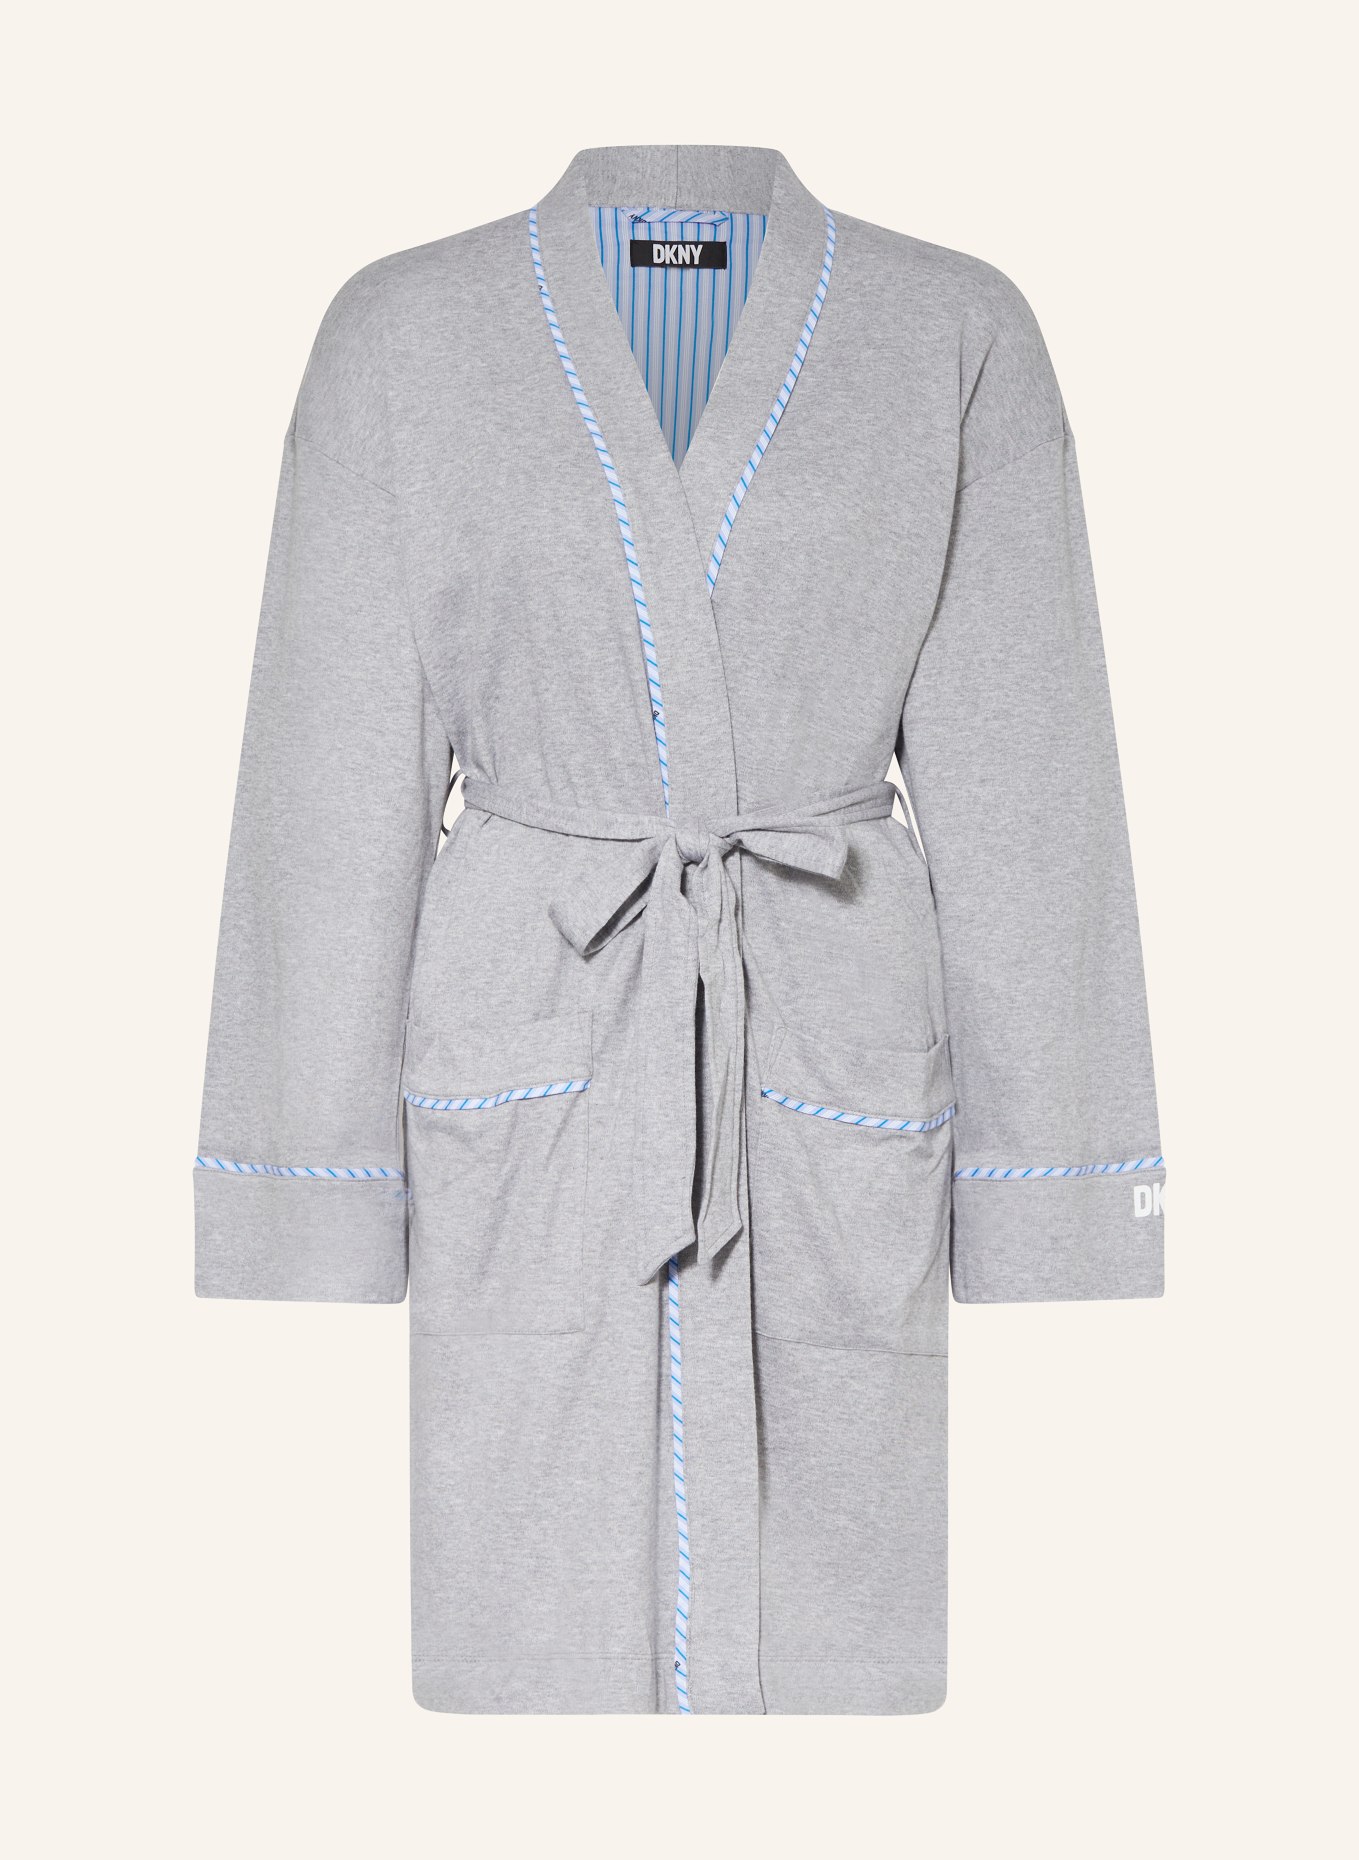 DKNY Women’s bathrobe, Color: GRAY (Image 1)